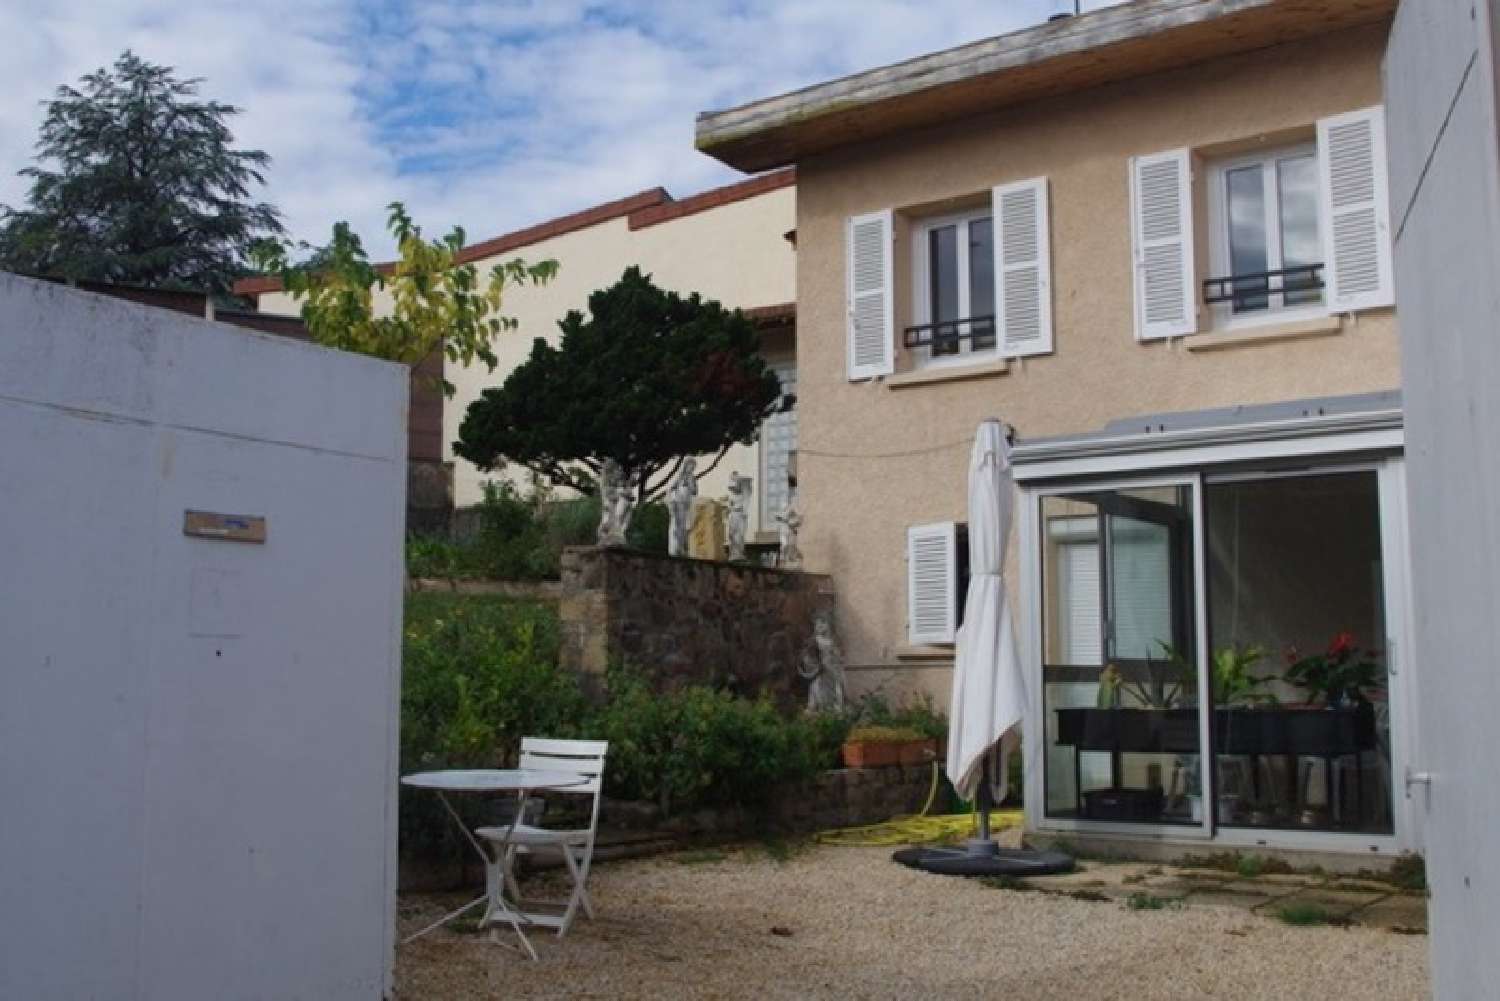  à vendre maison Roanne Loire 3